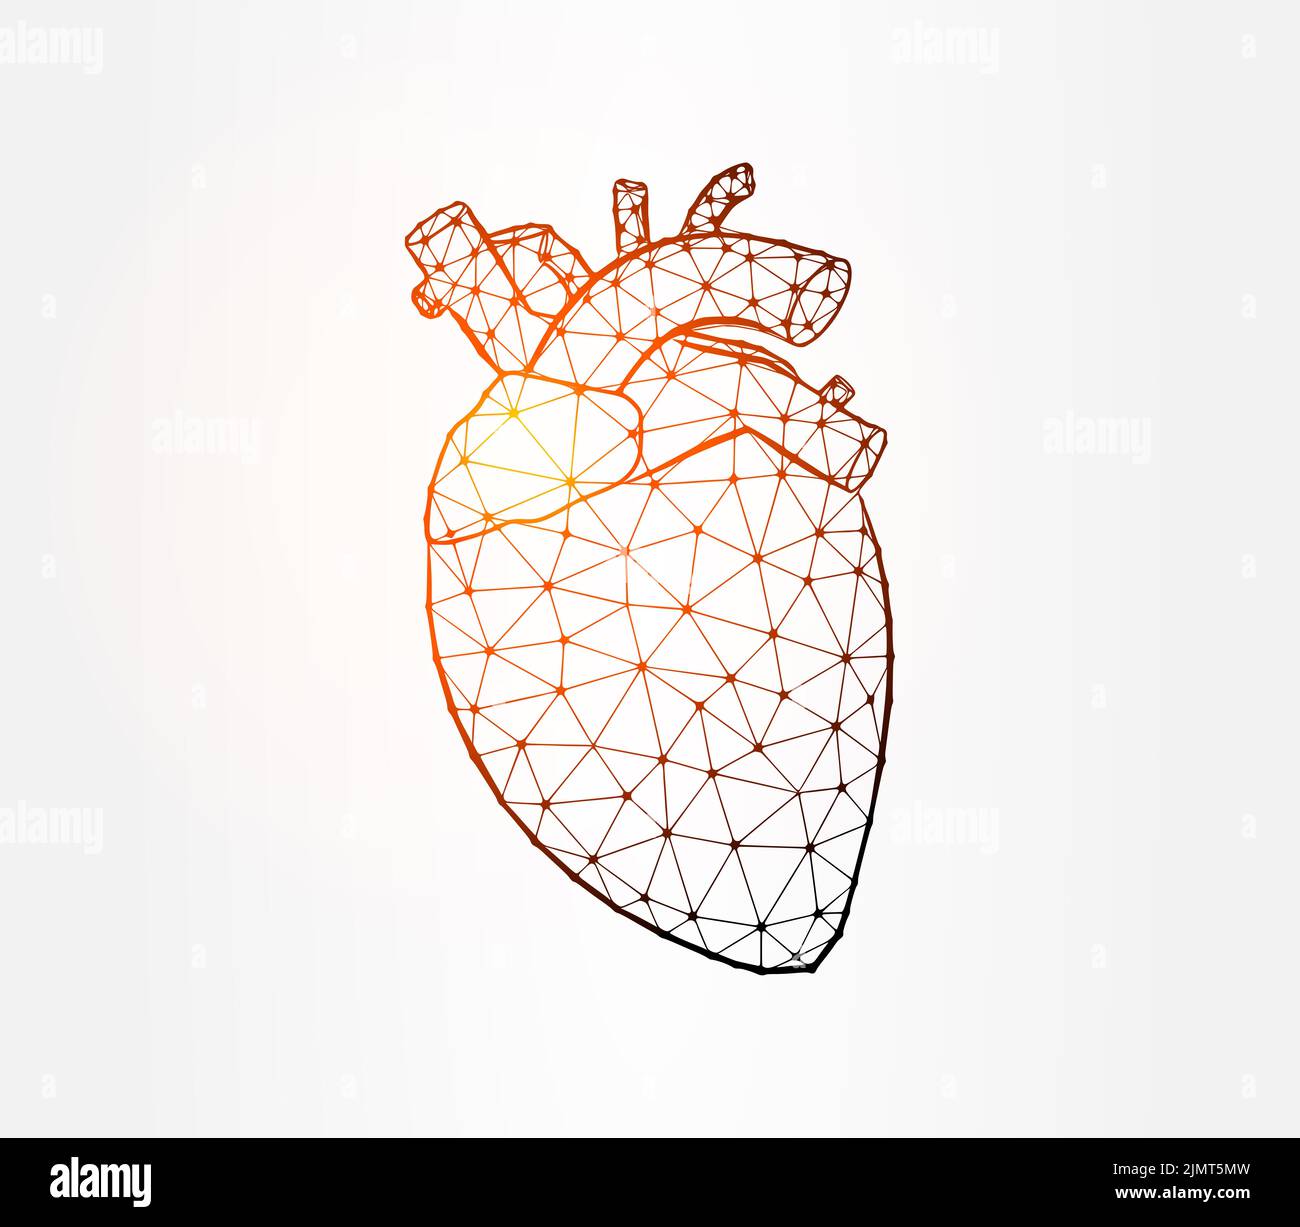 Illustration de la faible teneur en poly de l'organe interne du cœur sur fond blanc Banque D'Images